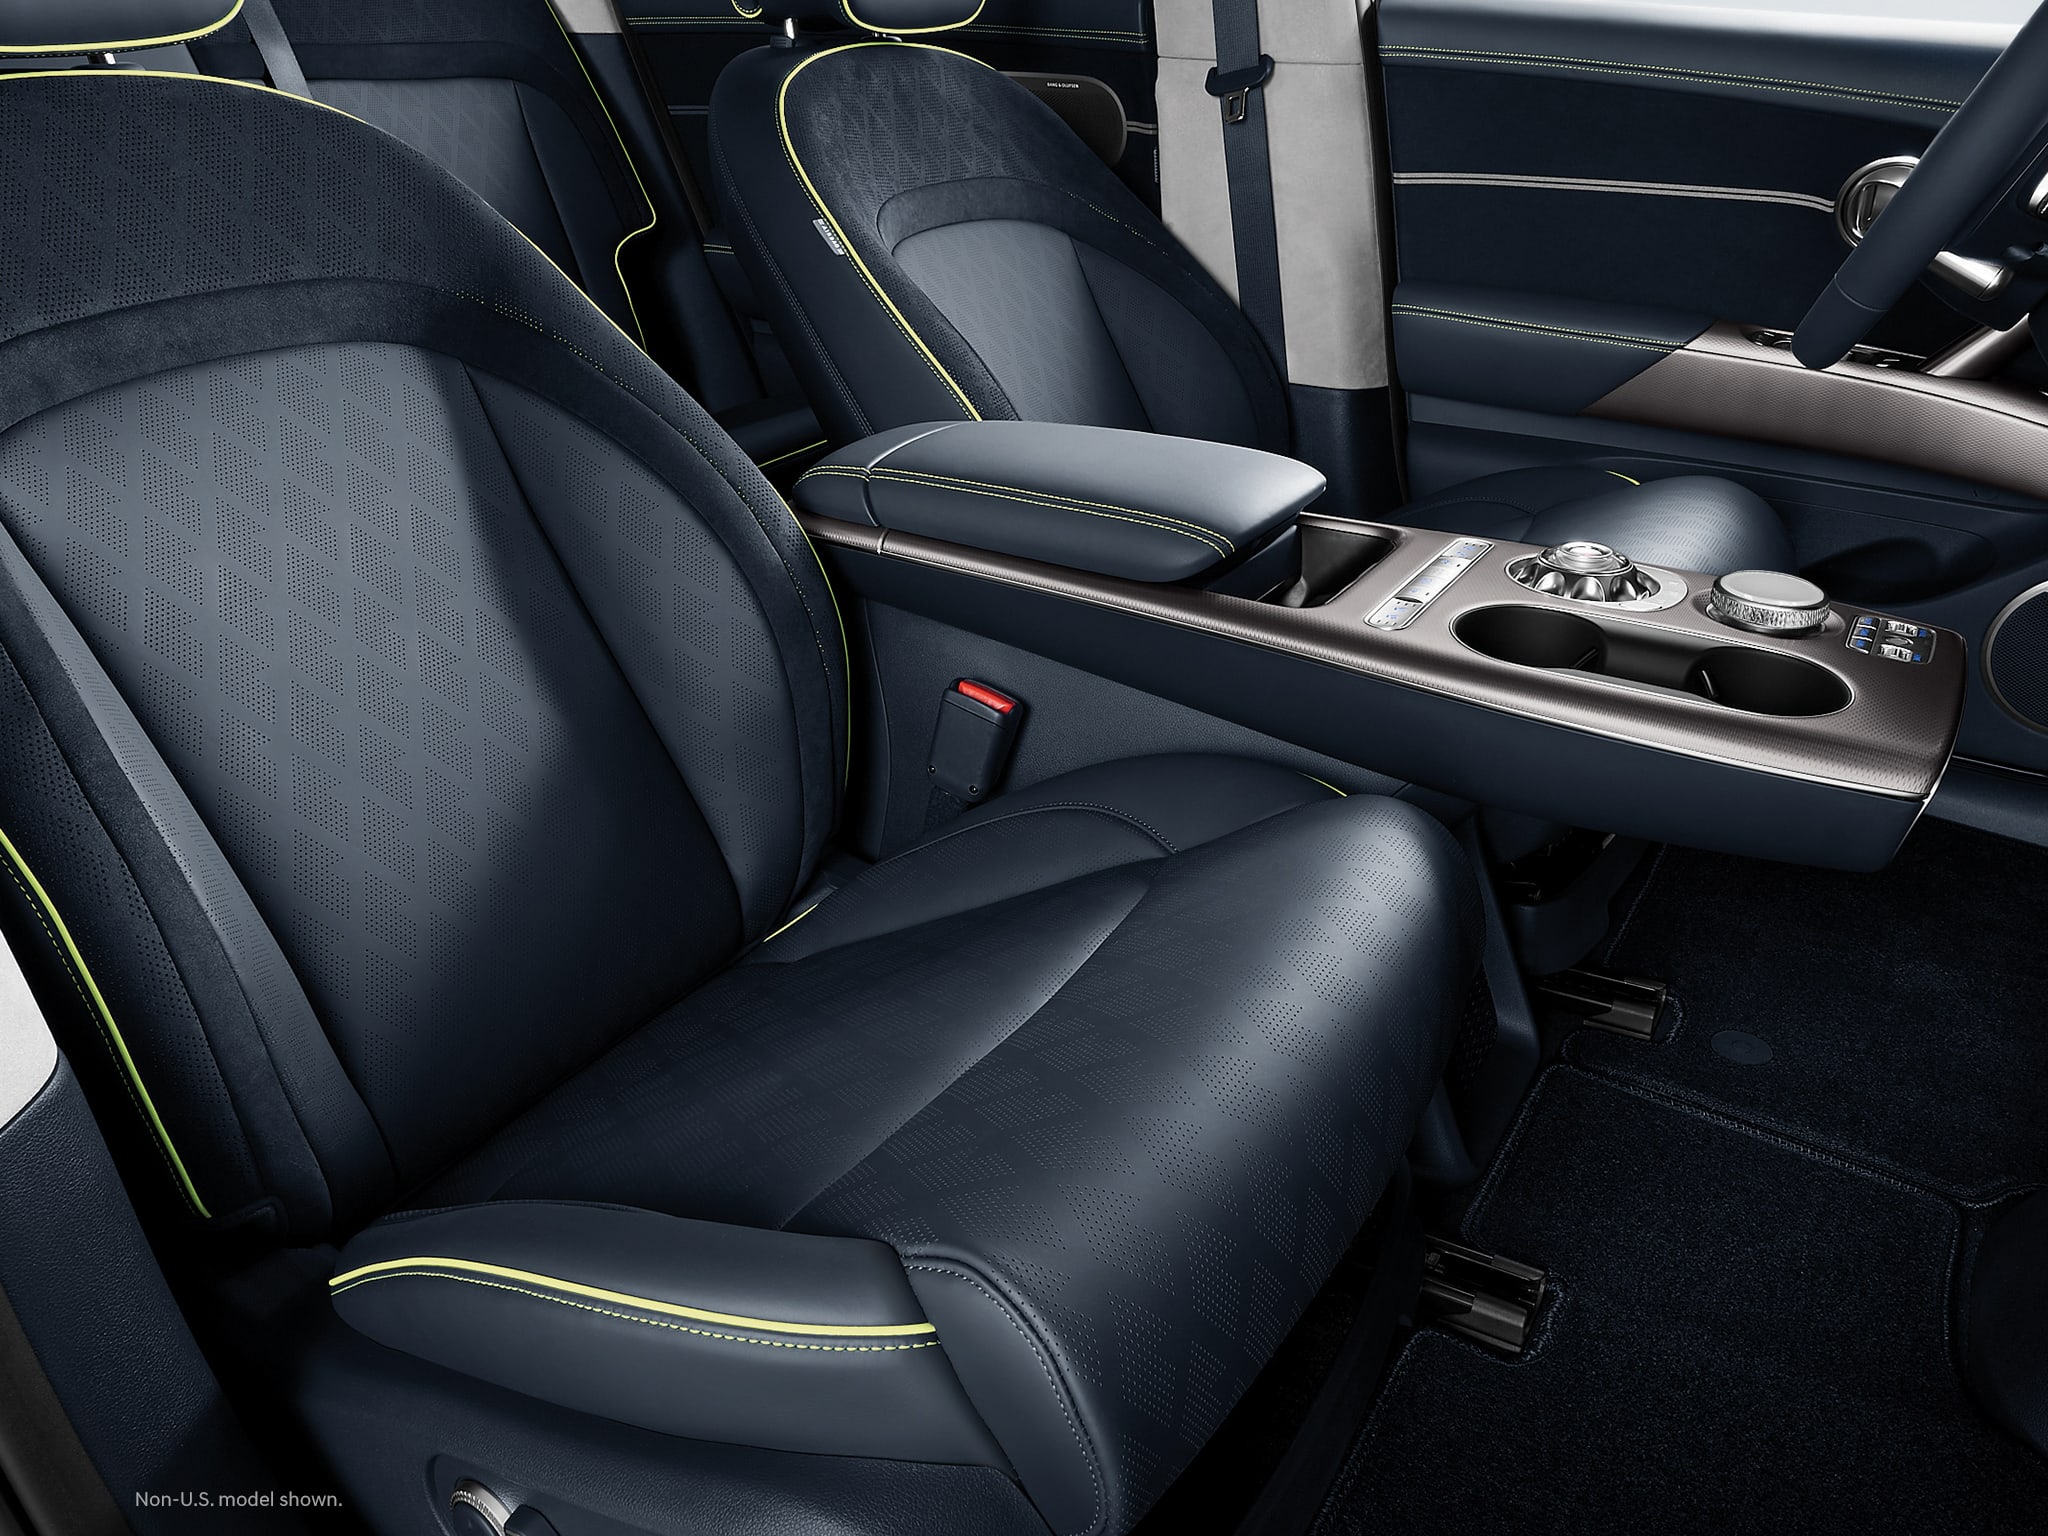 2023 Genesis GV60 interior shown in Obsidian Black.